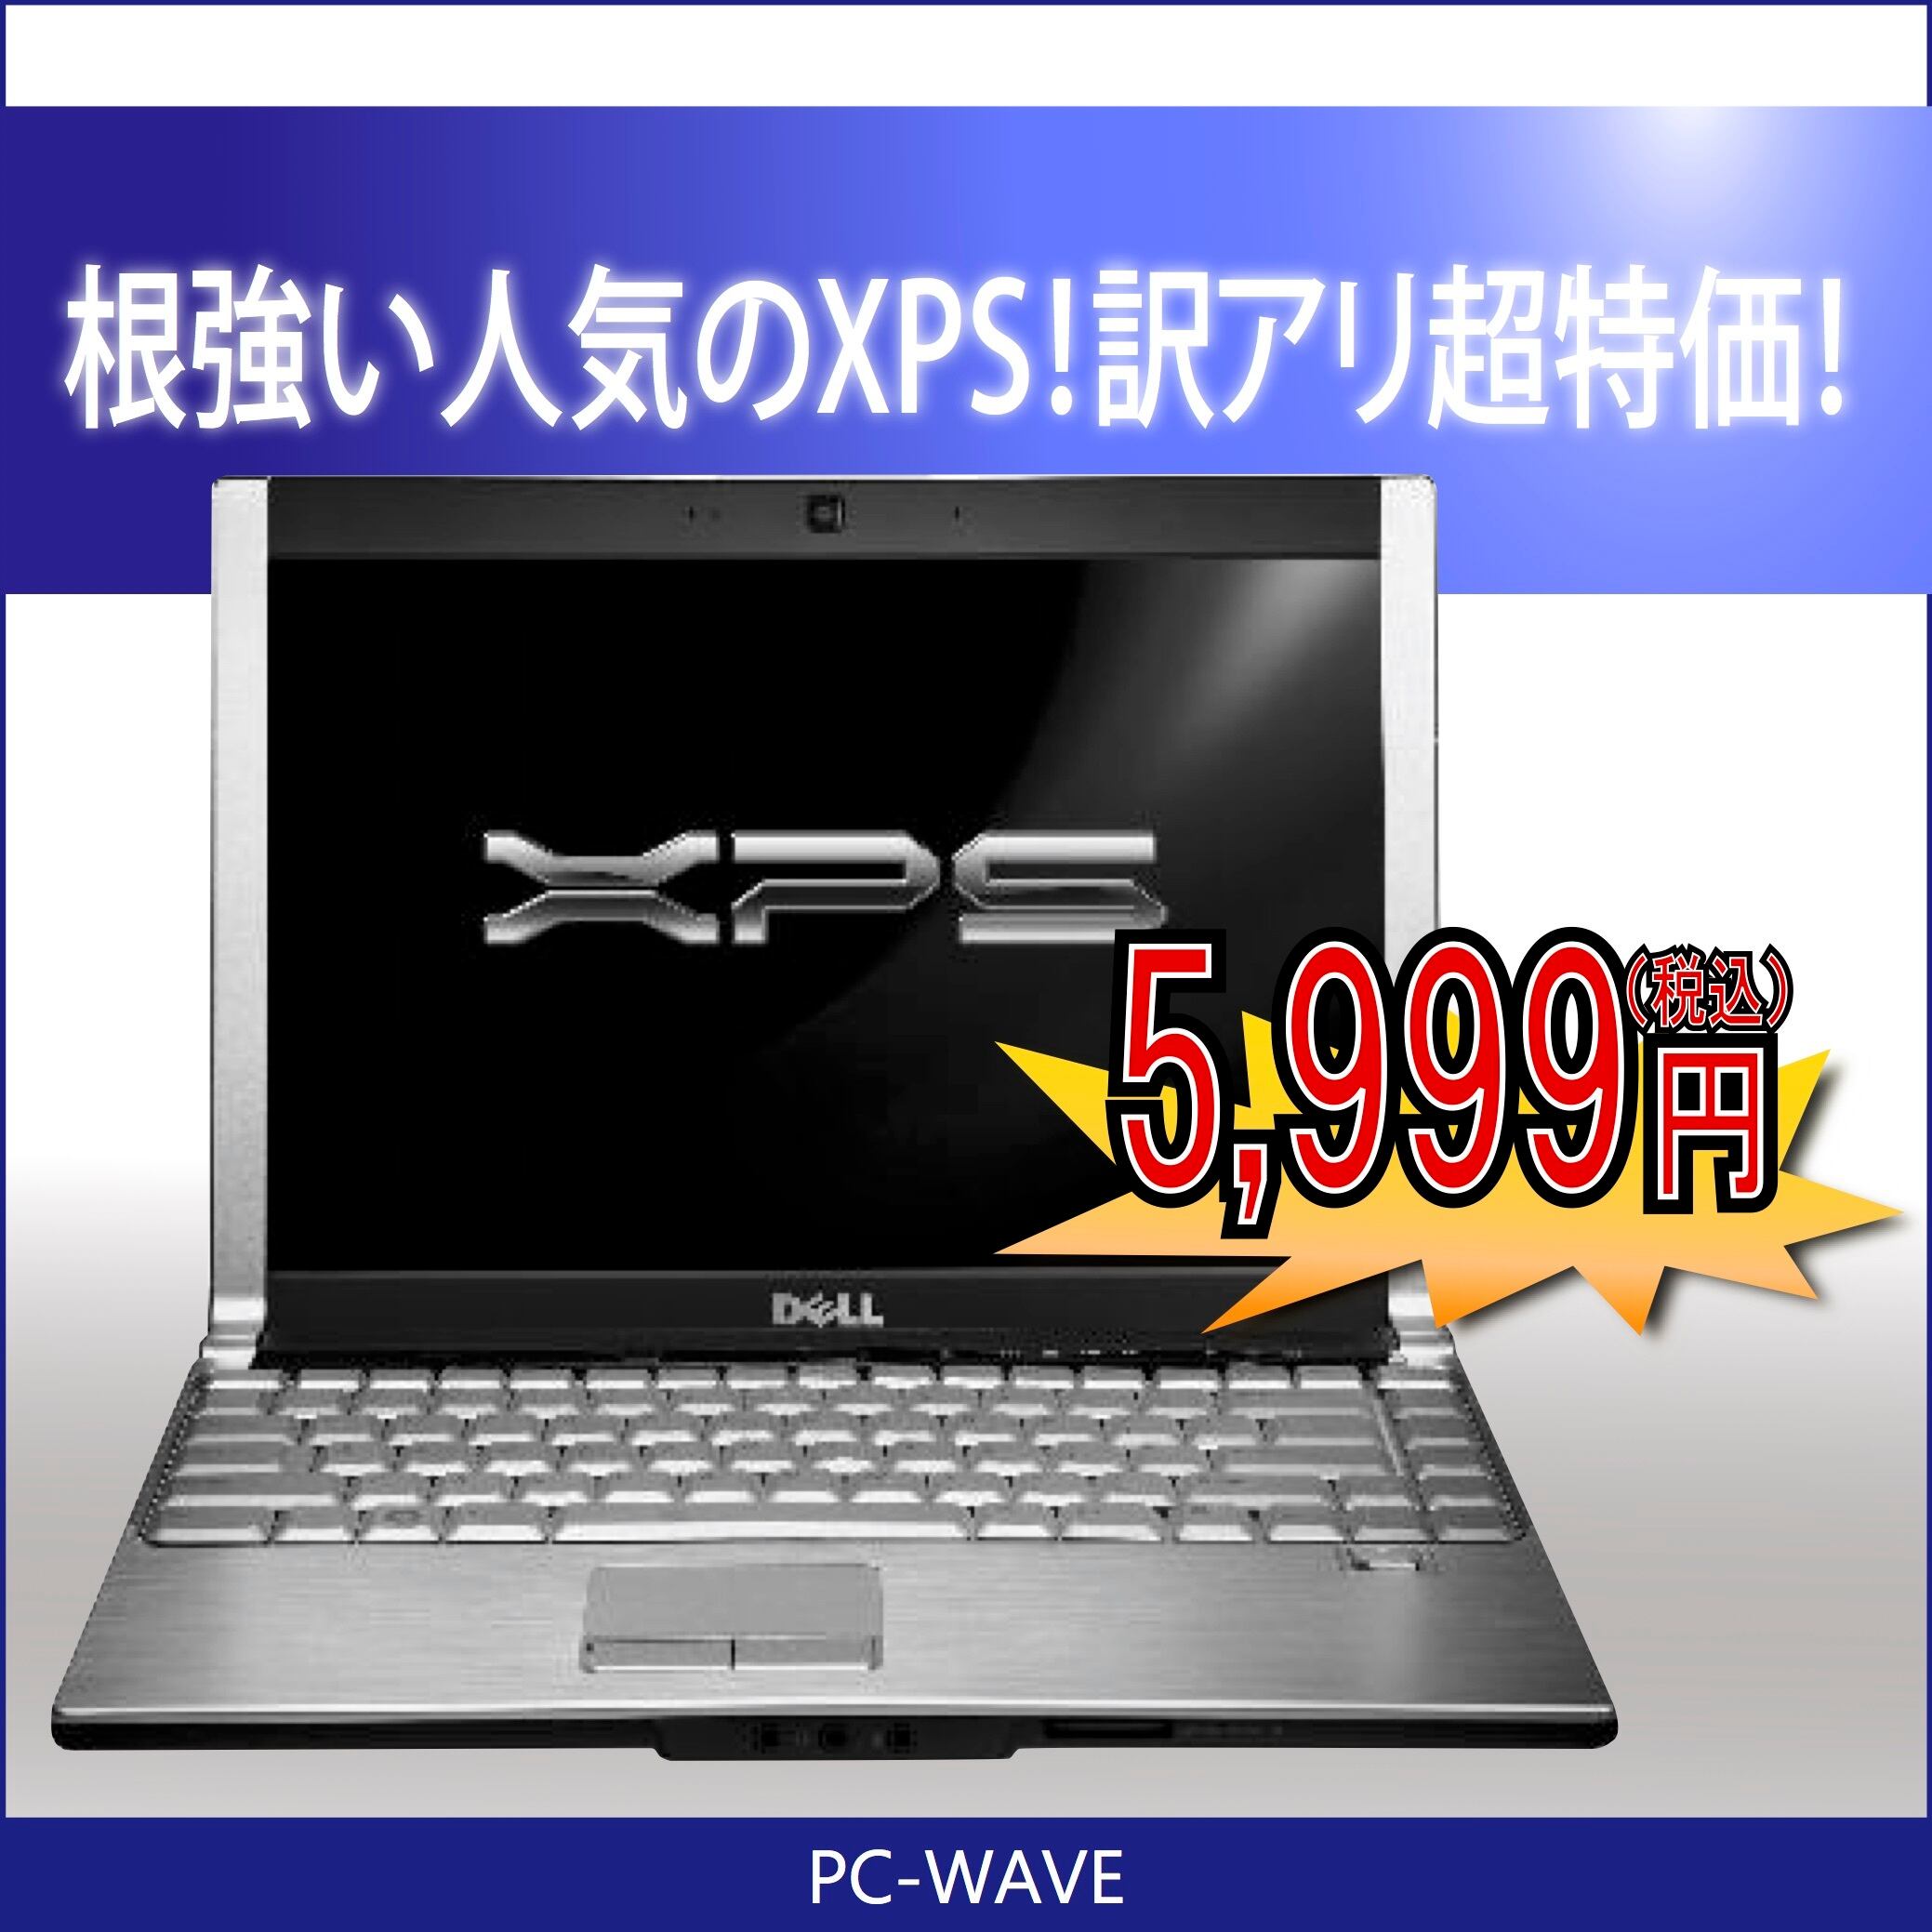 ノットパソコンDell XPS M1330